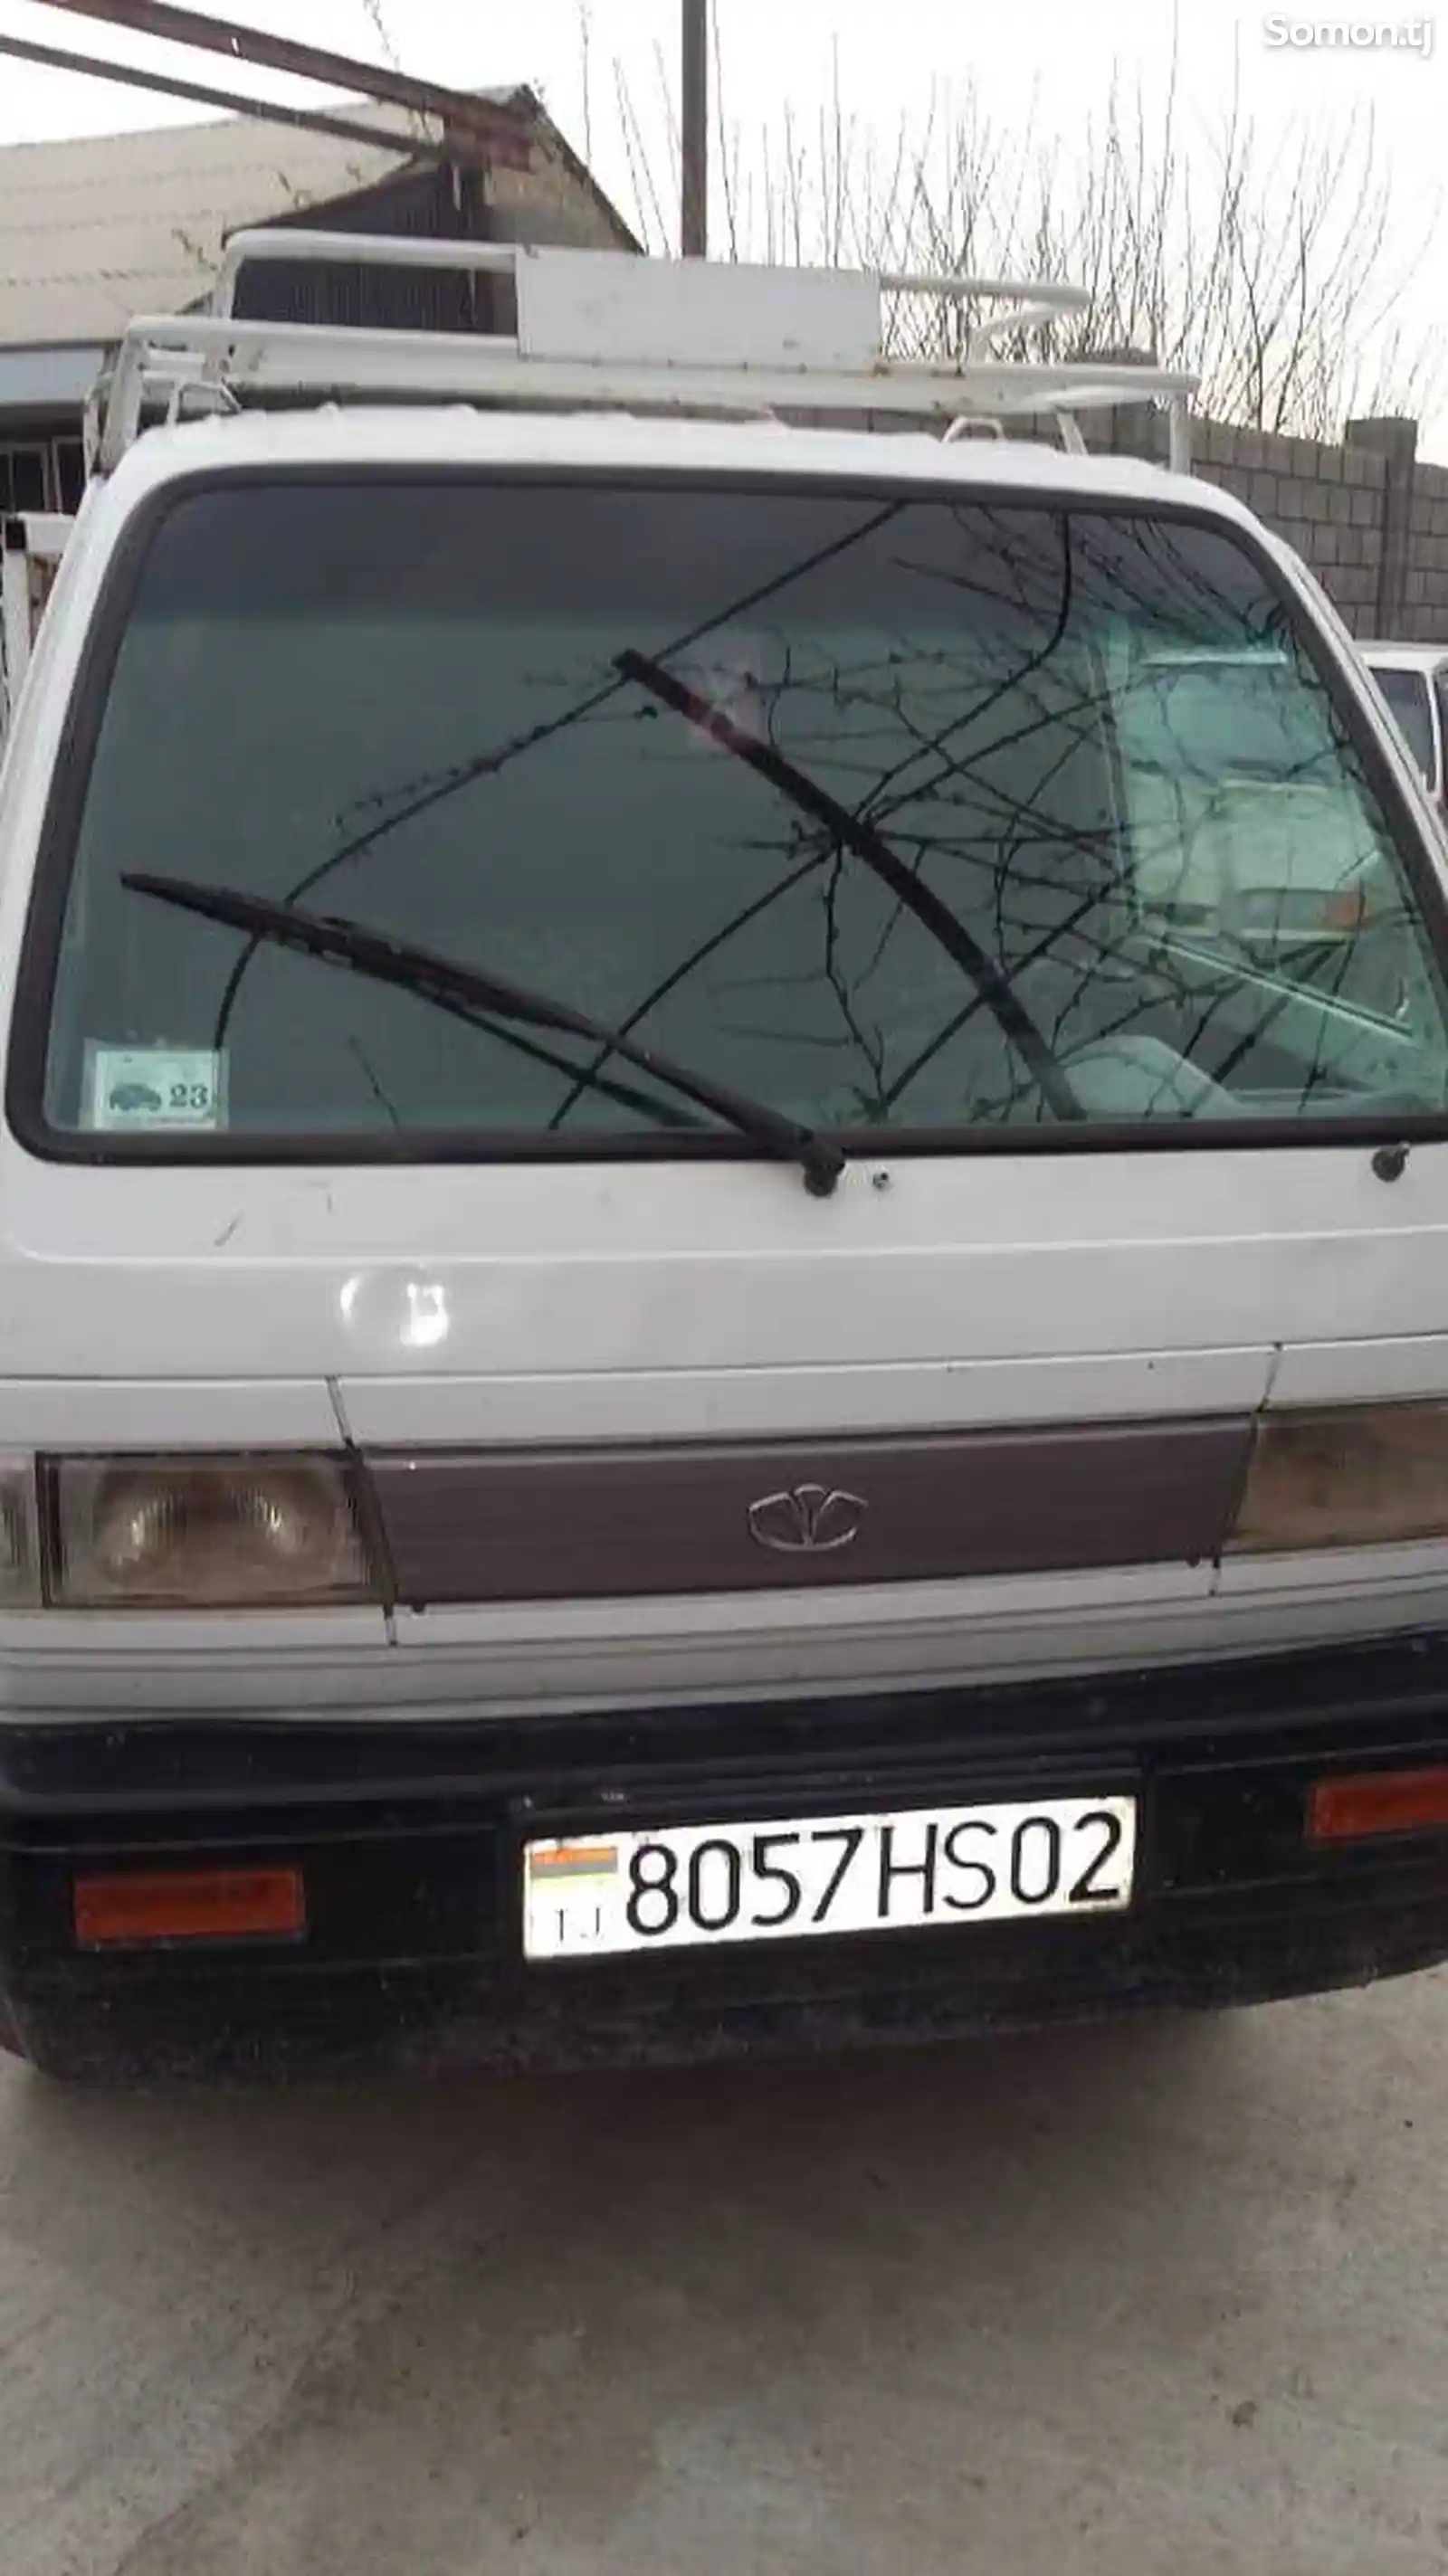 Бортовой автомобиль Daewoo Labo, 1994-2